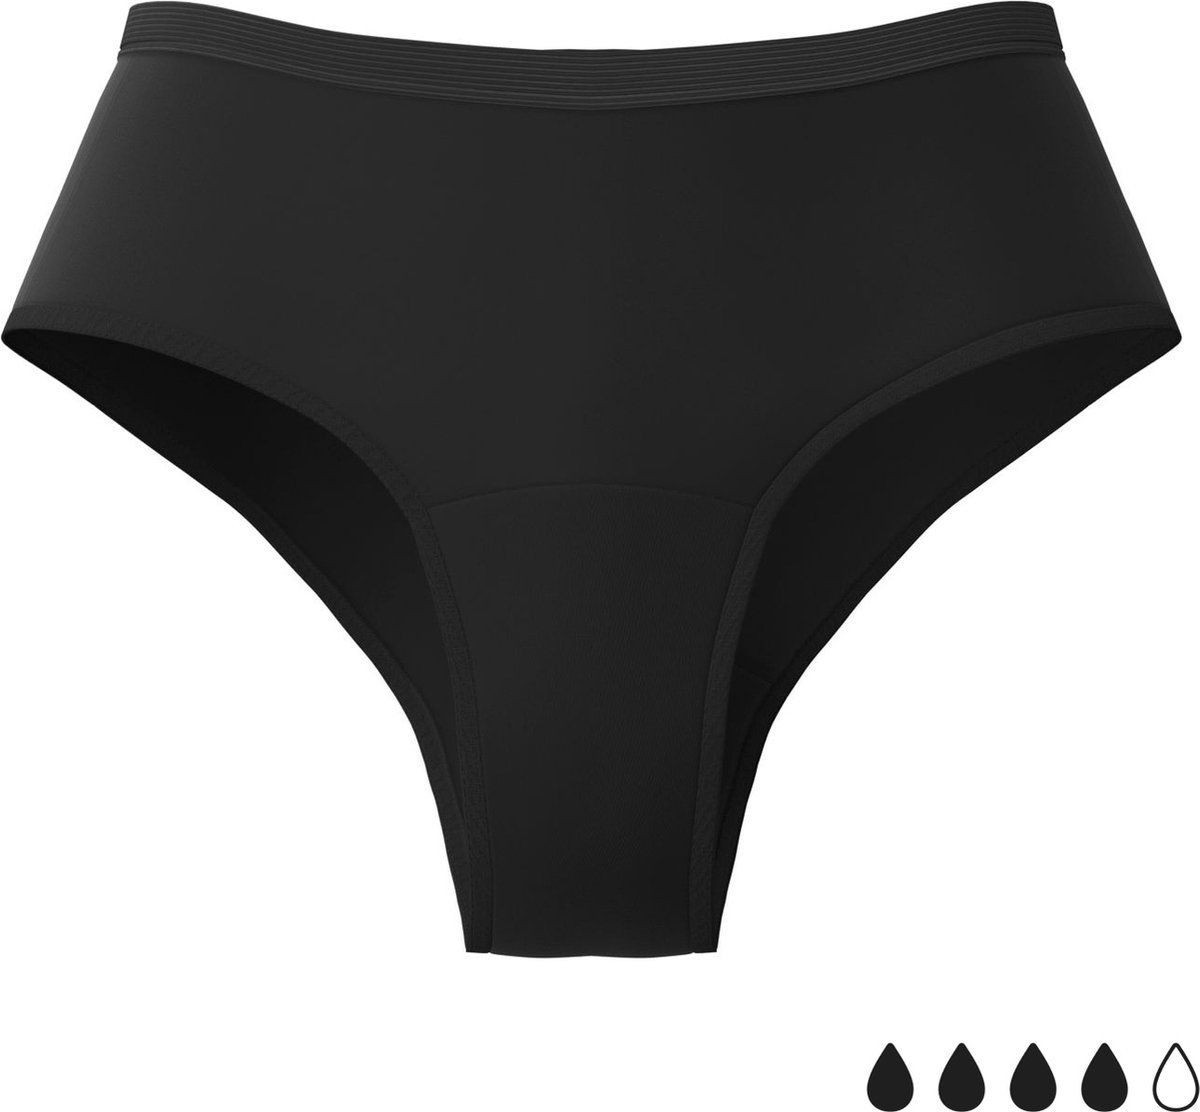 Weekiss Boyshort - Menstruatie Ondergoed, period underwear, period panties, XS (34), zwart